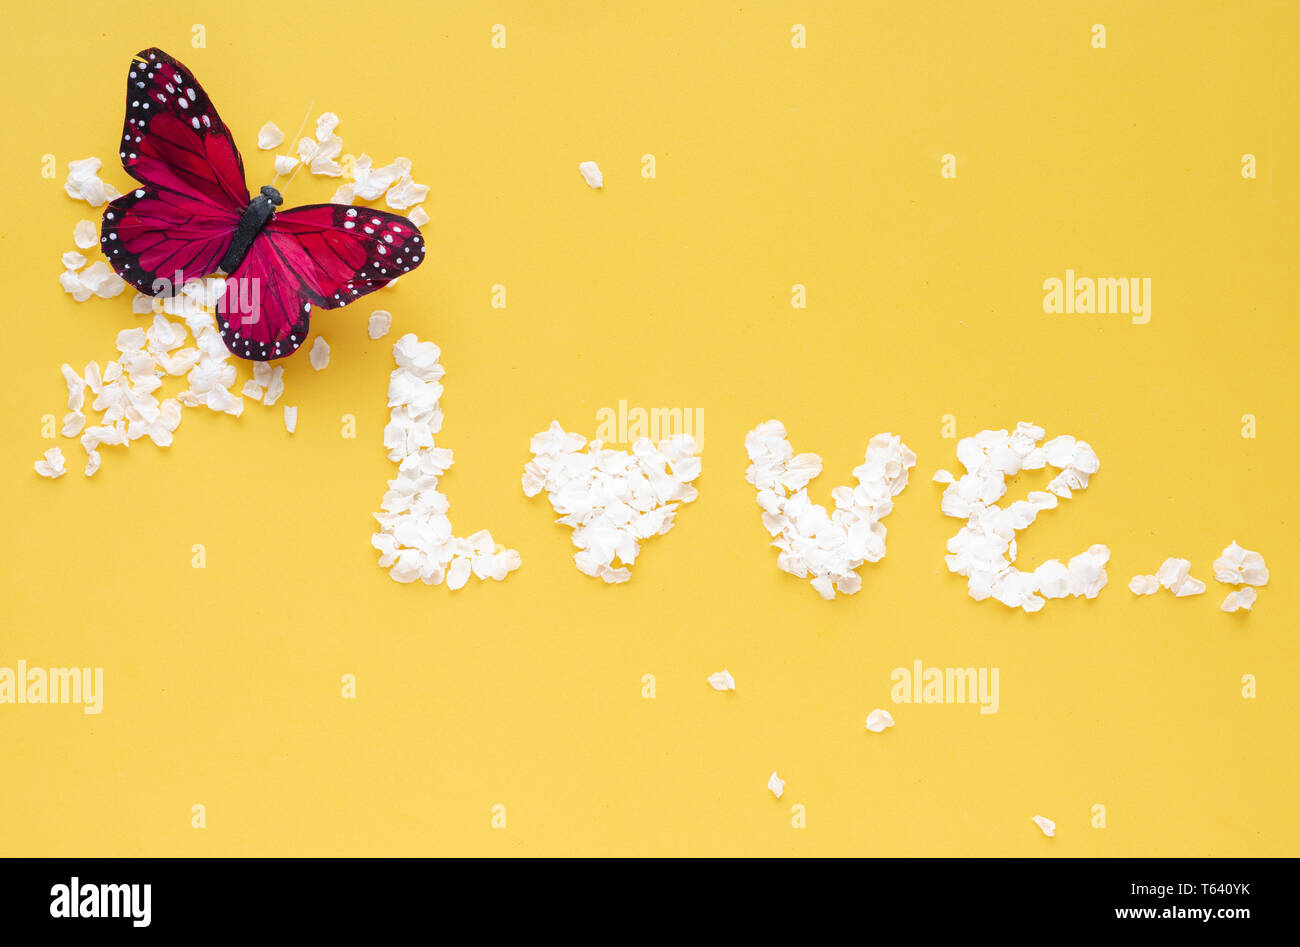 Palabra amor con pétalos de flores blancas sobre fondo amarillo. Con mariposas decorativas. Foto de stock